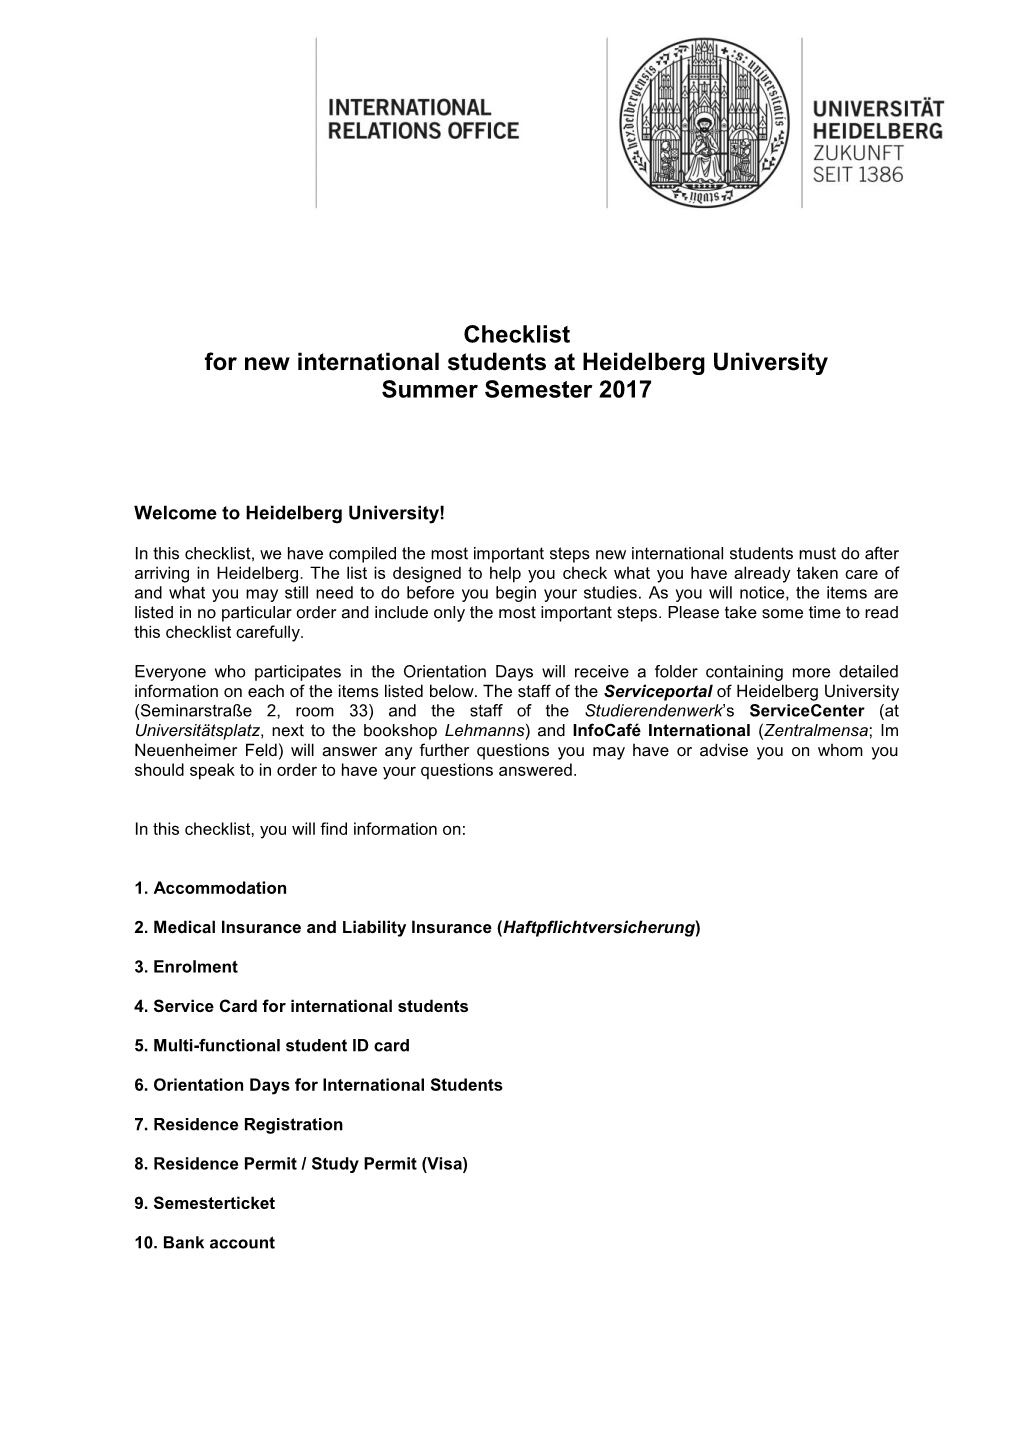 Checklist for New International Students at Heidelberg University Summer Semester 2017